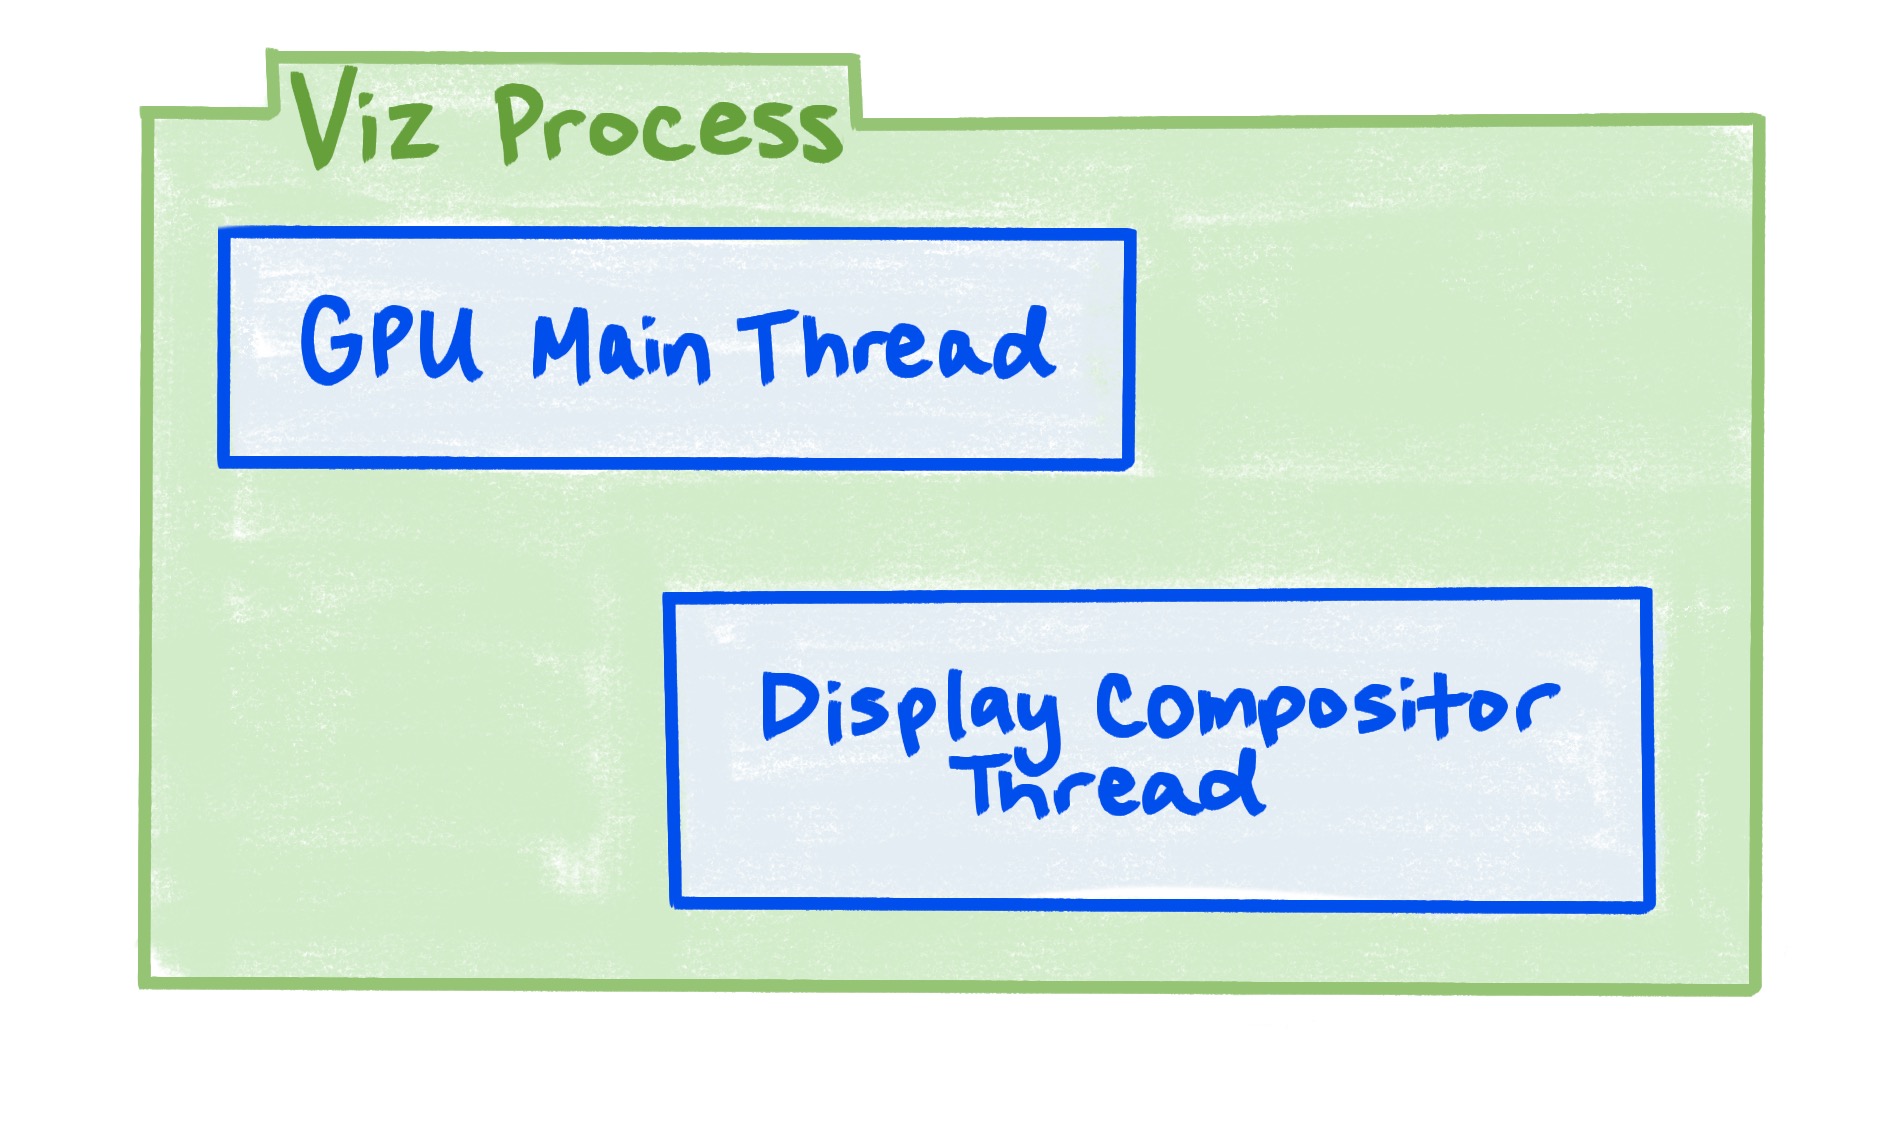 Viz プロセスには、GPU メインスレッドとディスプレイ コンポジタ スレッドが含まれます。